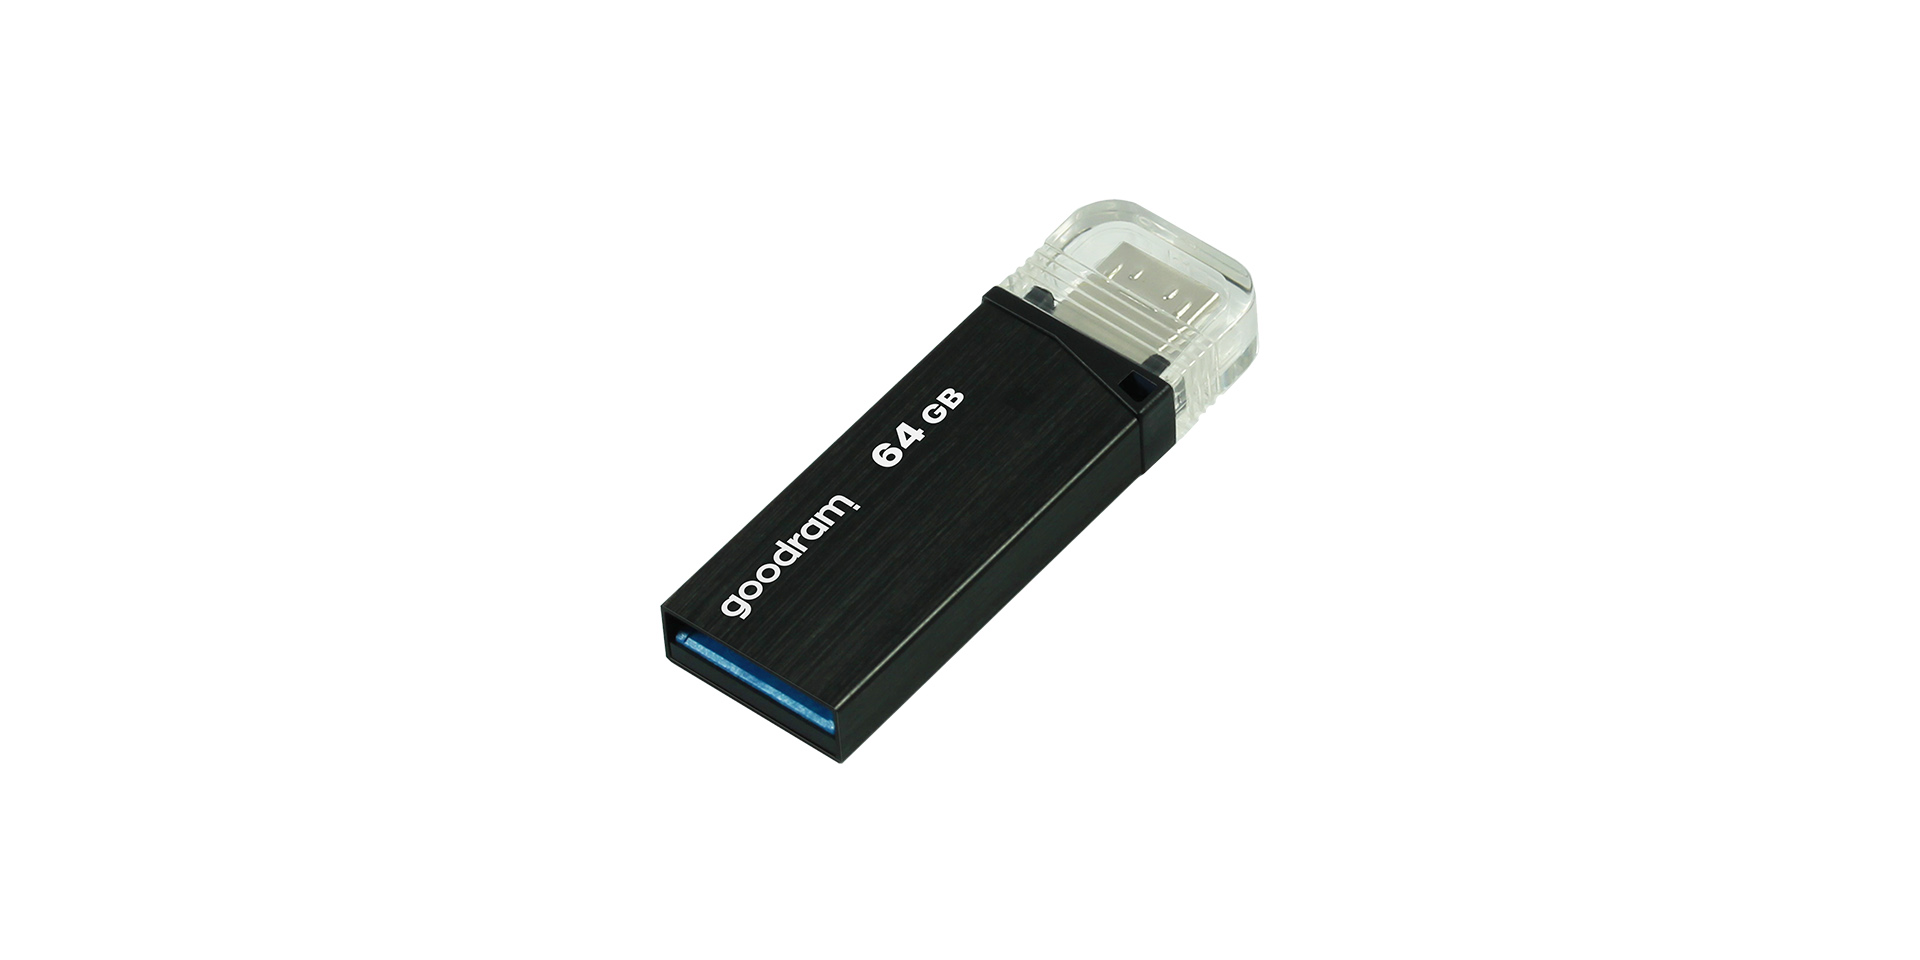 16GB USB 3.0 Black - OTN3